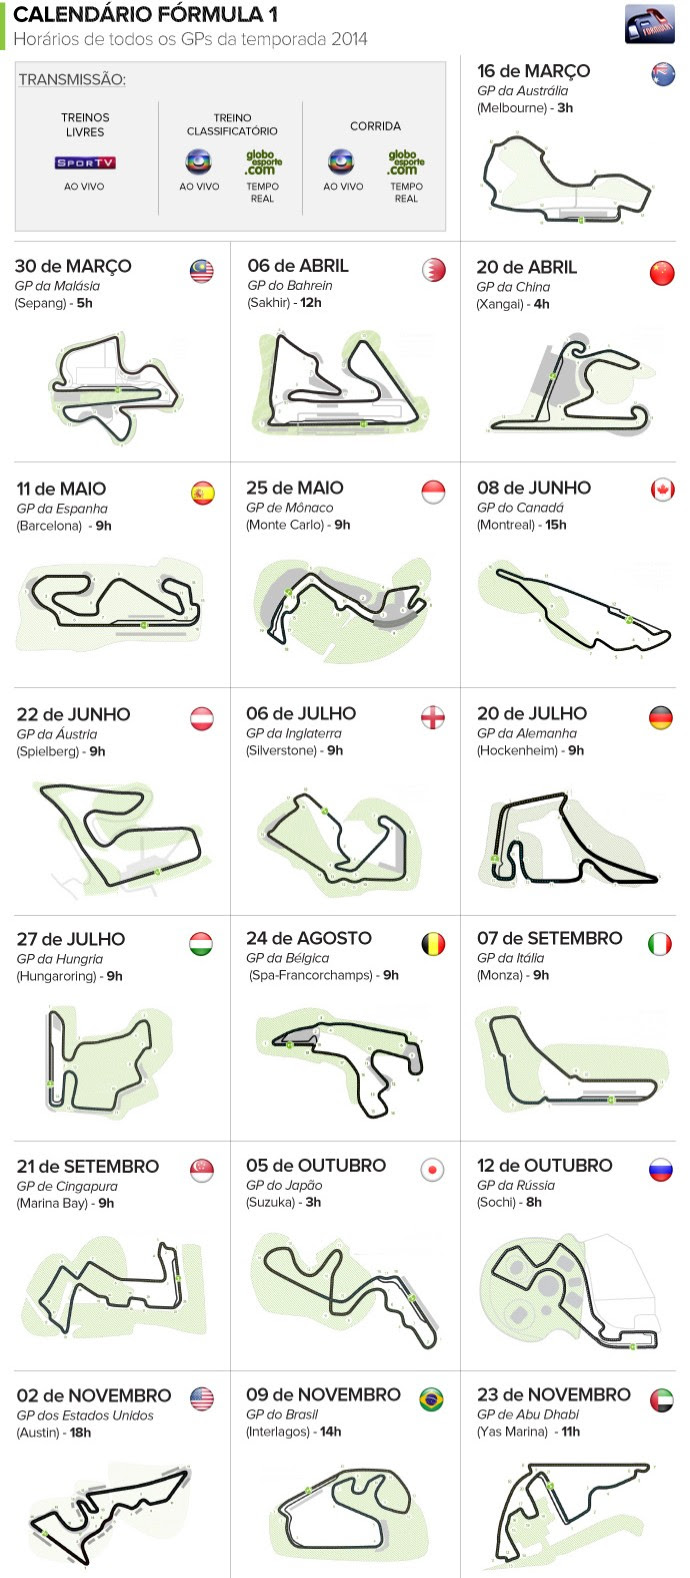 Calendário de 2014 da Fórmula 1